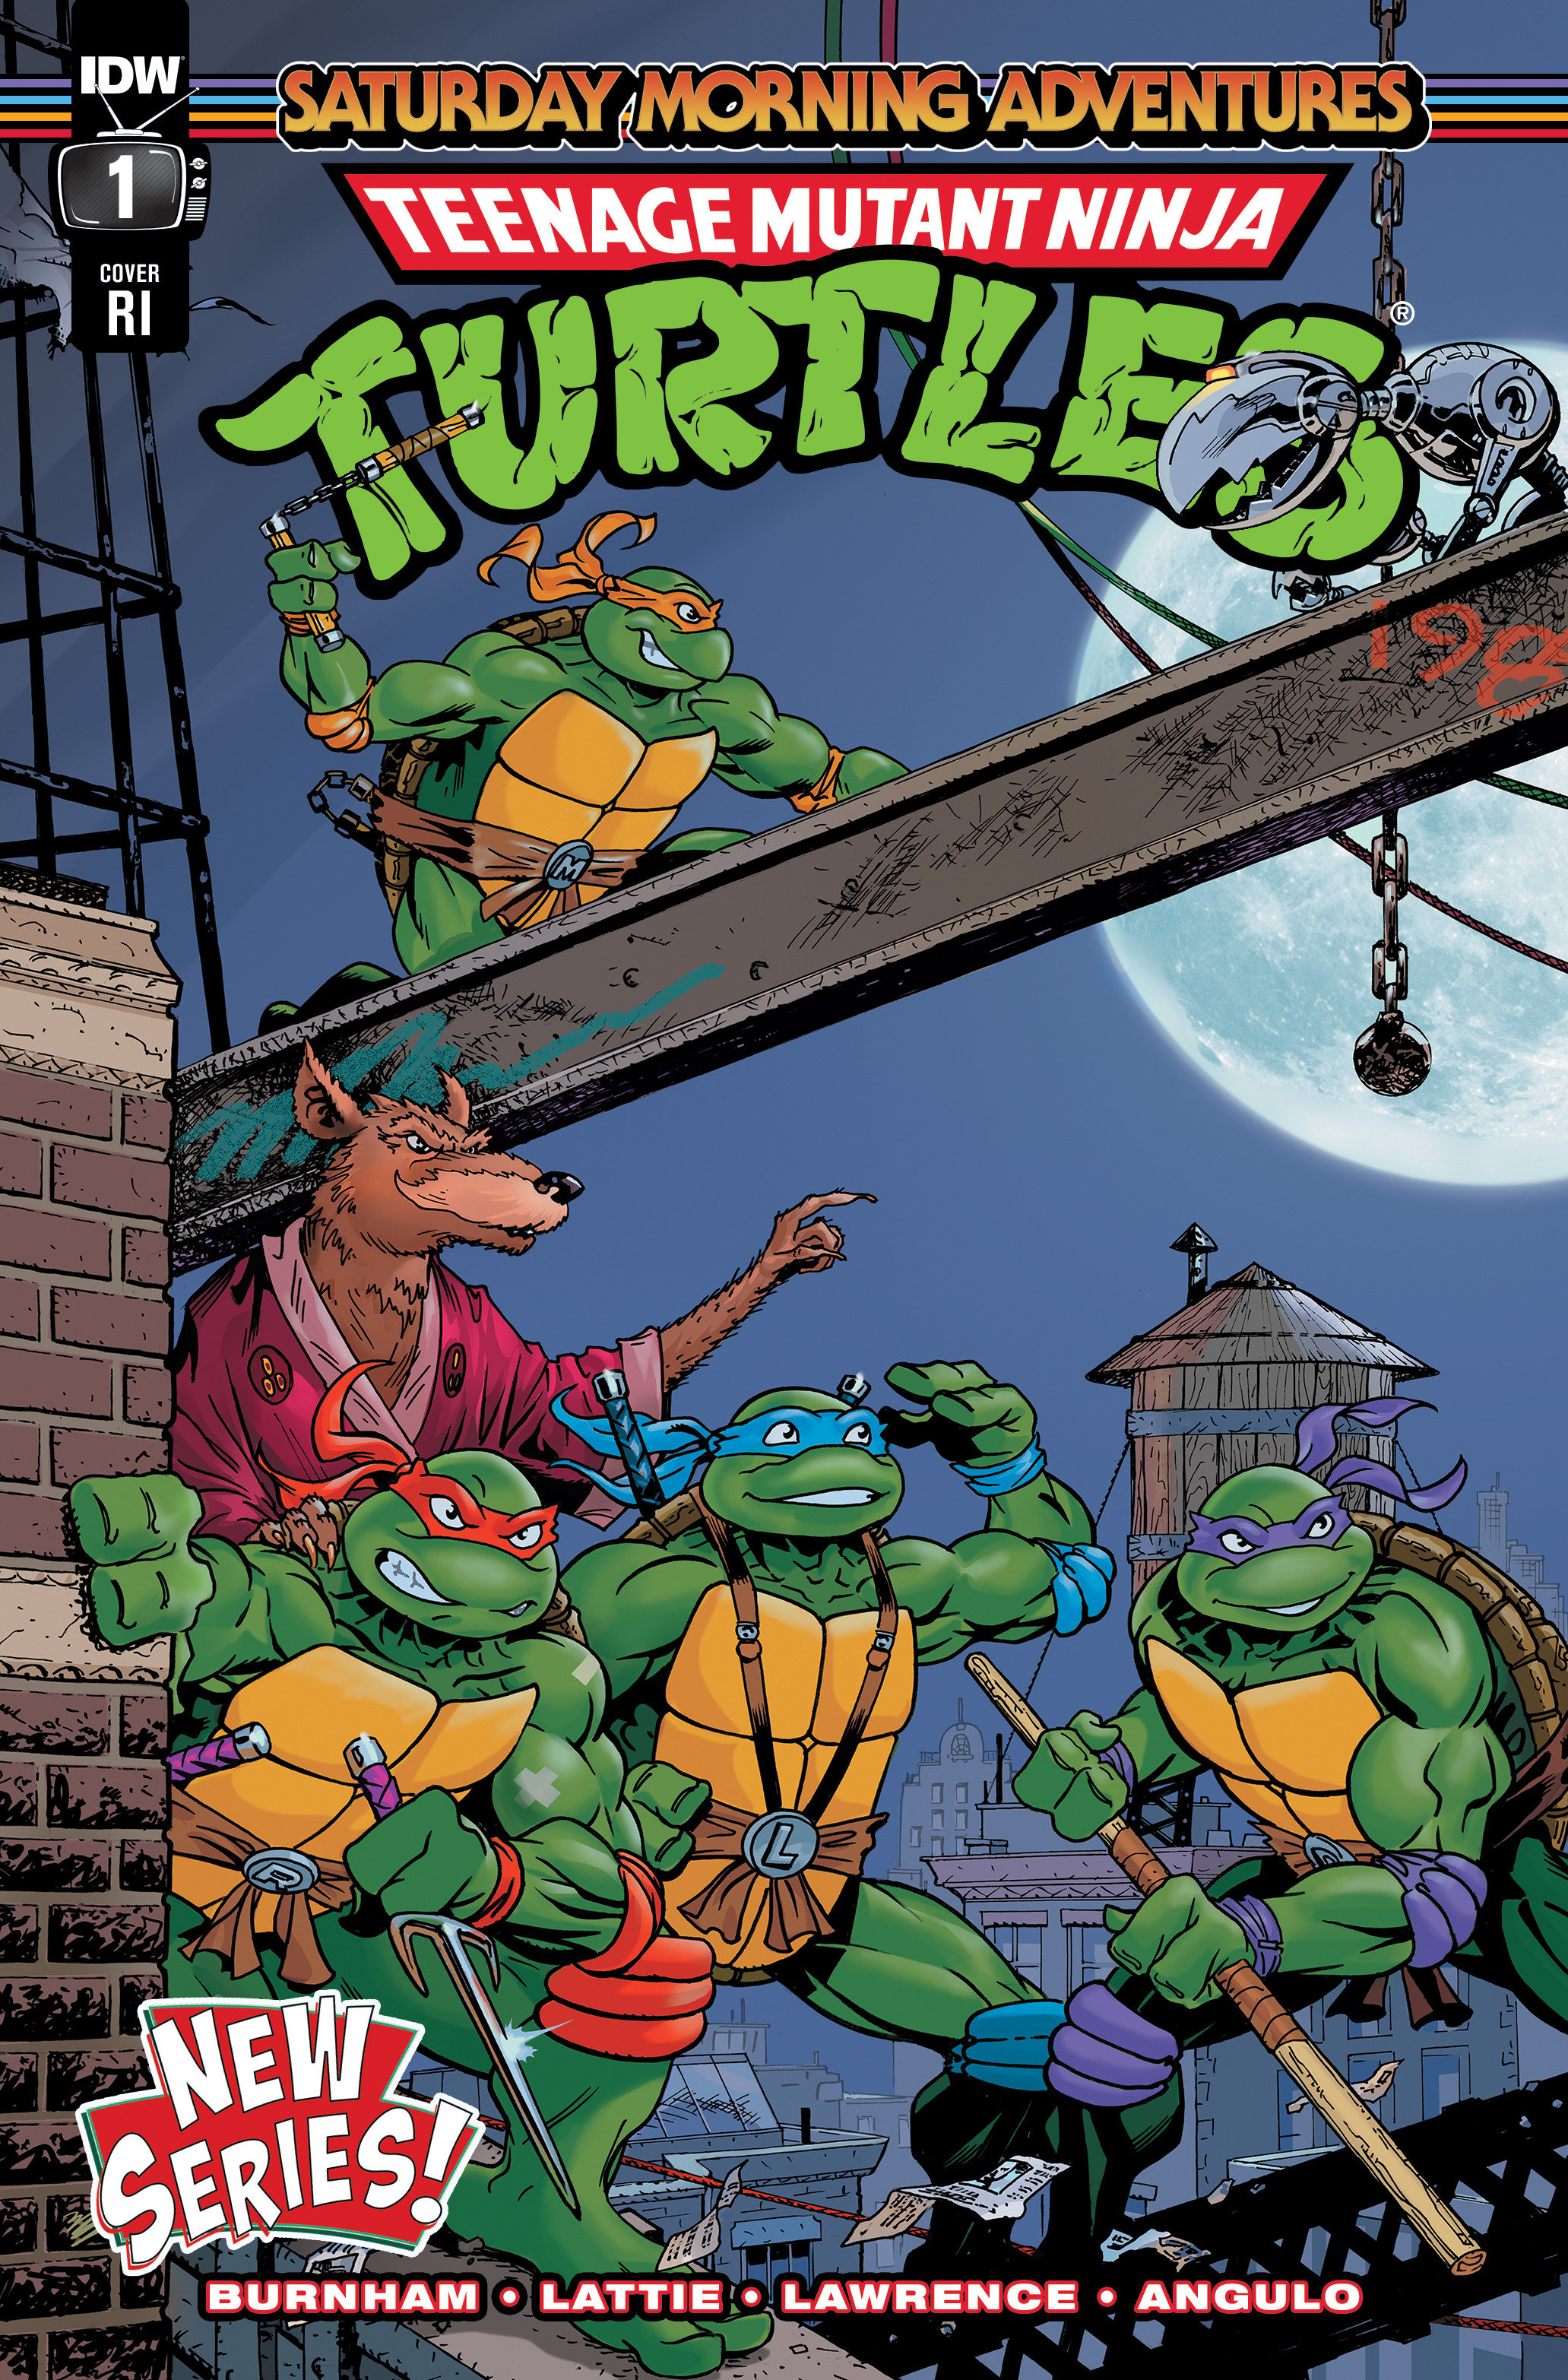 Teenage mutant ninja turtles saturday morning adventures continued